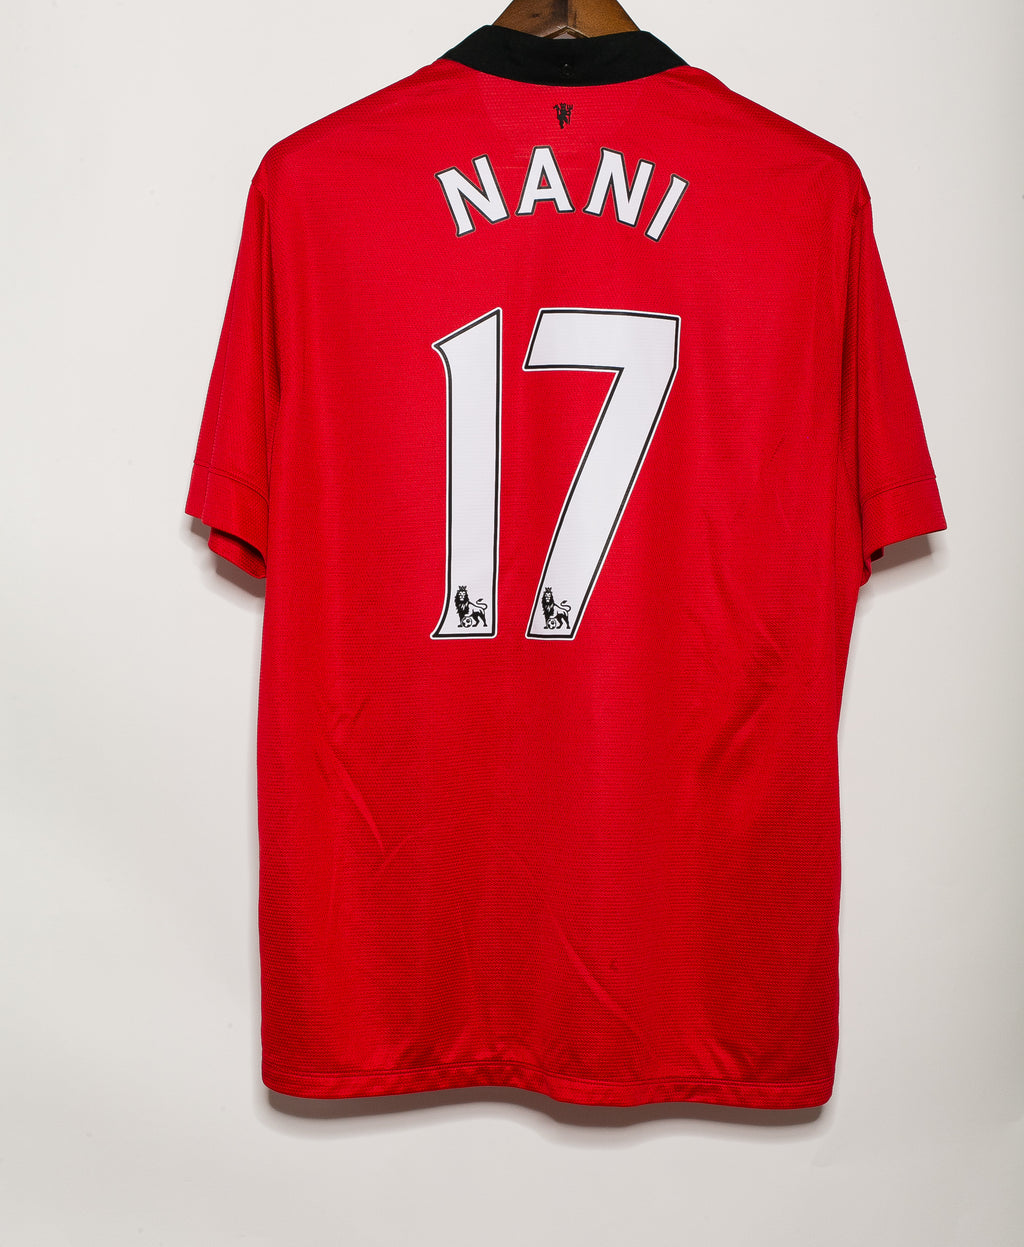 Portugal Nani - Home Kit - Manchester United F.c. Soccerstarz Nani